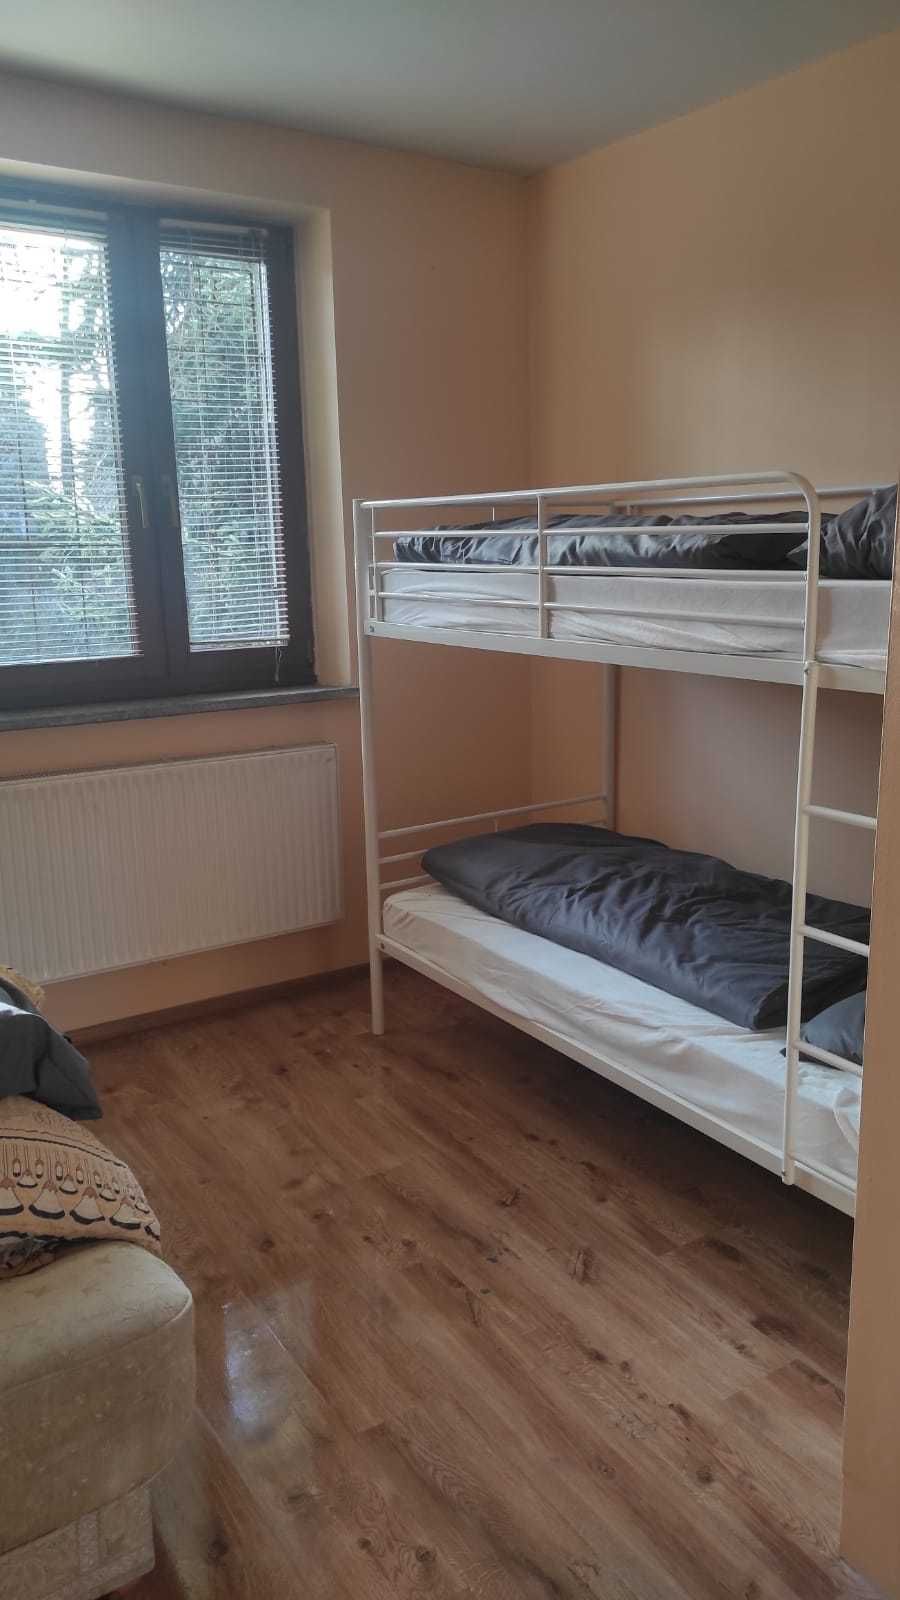 Безкоштовні кімнати для біженців / pokoje dla uchodzców